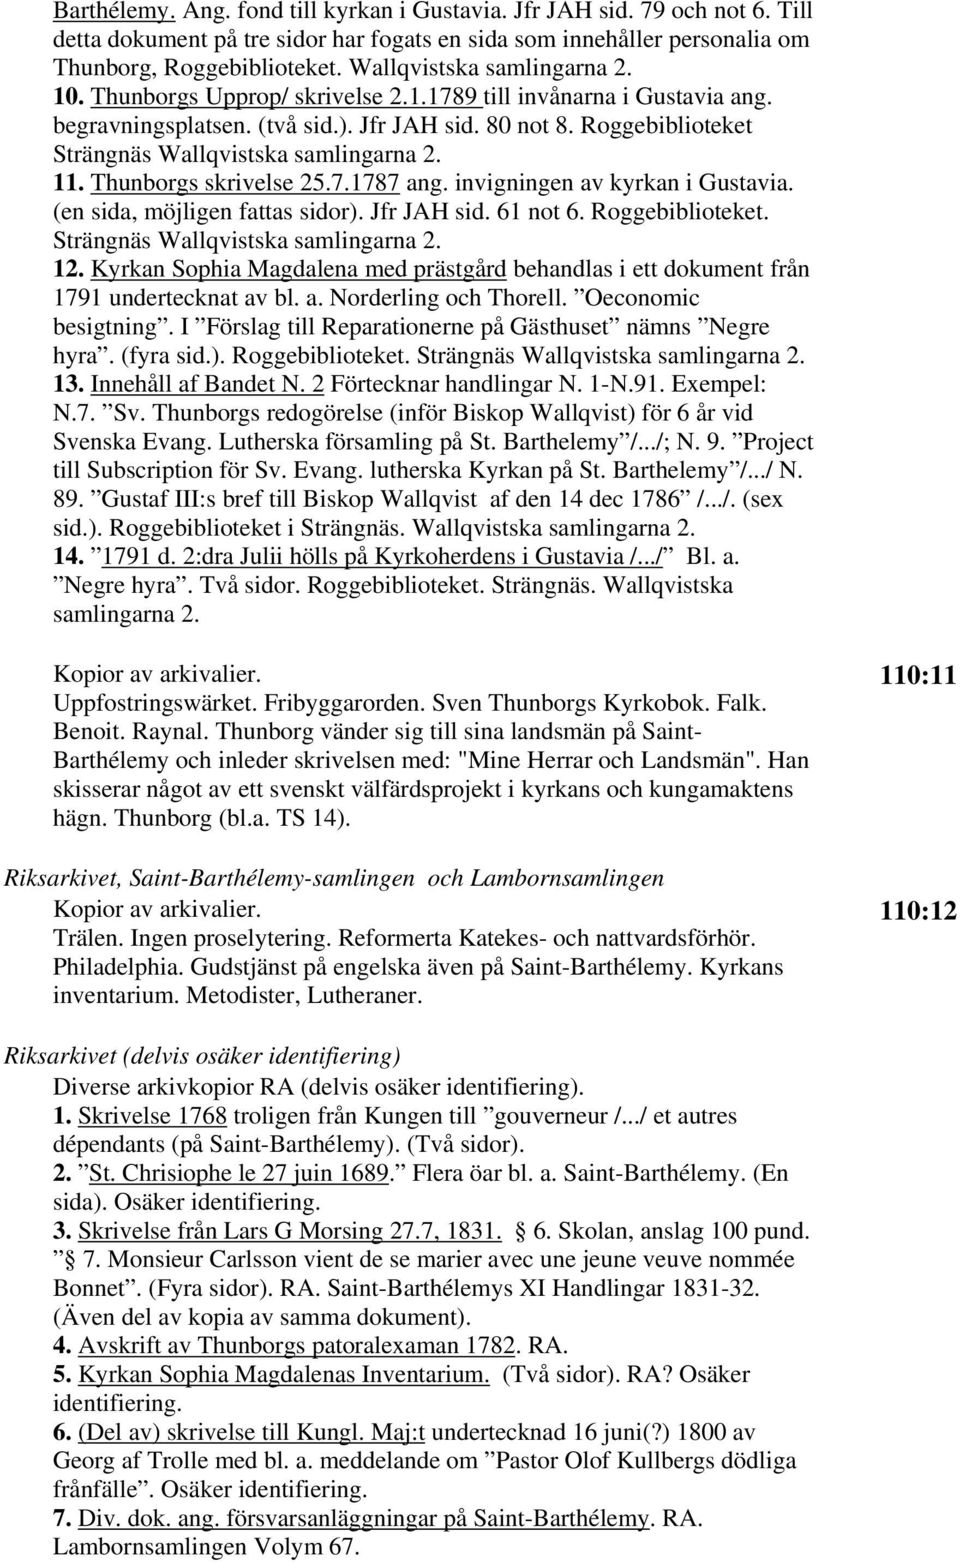 Roggebiblioteket Strängnäs Wallqvistska samlingarna 2. 11. Thunborgs skrivelse 25.7.1787 ang. invigningen av kyrkan i Gustavia. (en sida, möjligen fattas sidor). Jfr JAH sid. 61 not 6.